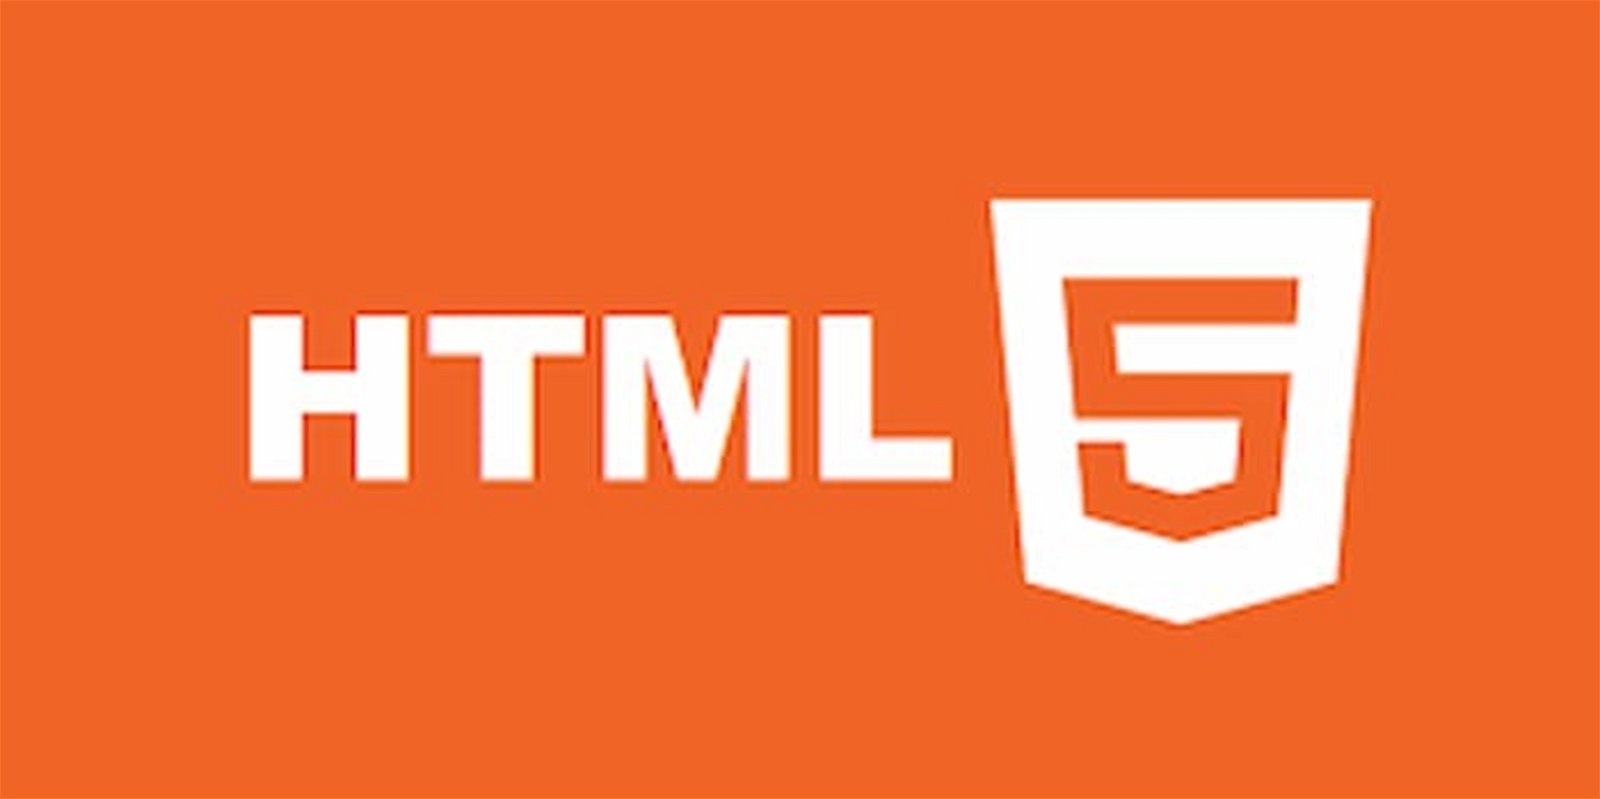 Estos son los mejores cursos de HTML a los que puedes unirte para aprender a crear páginas web